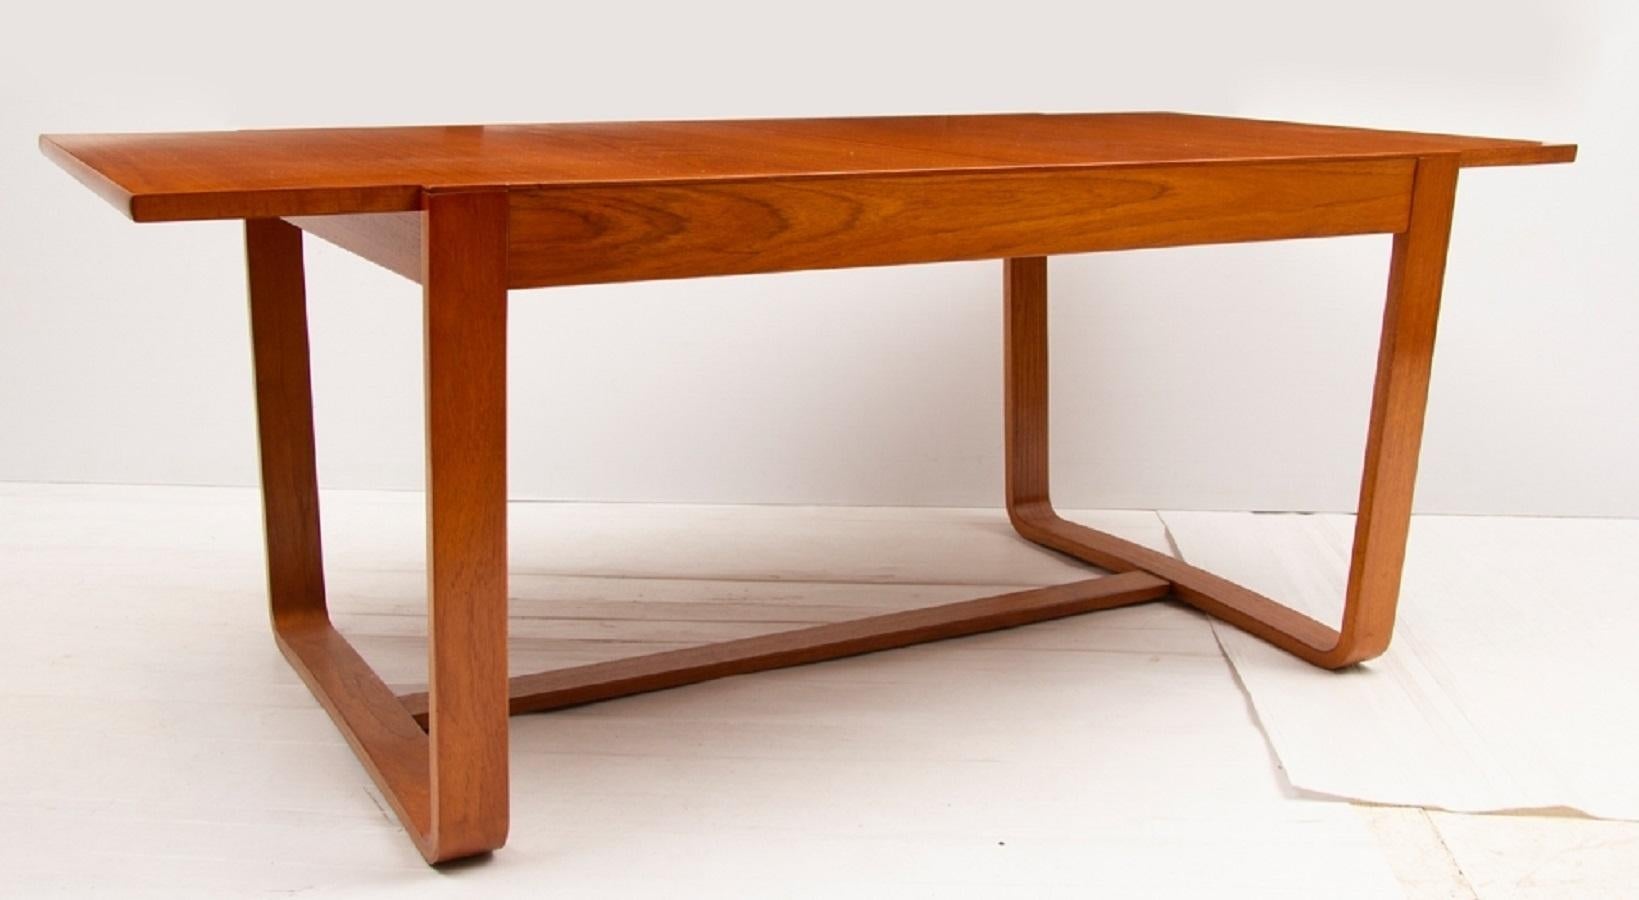 Designed by Gunther Hoffstead for Uniflex. Golden teak wood & original upholstery

Measures: Table H 71cm, W 92cm, D 183cm-30cm

Chairs H 76cm, W 53cm, D 47cm.